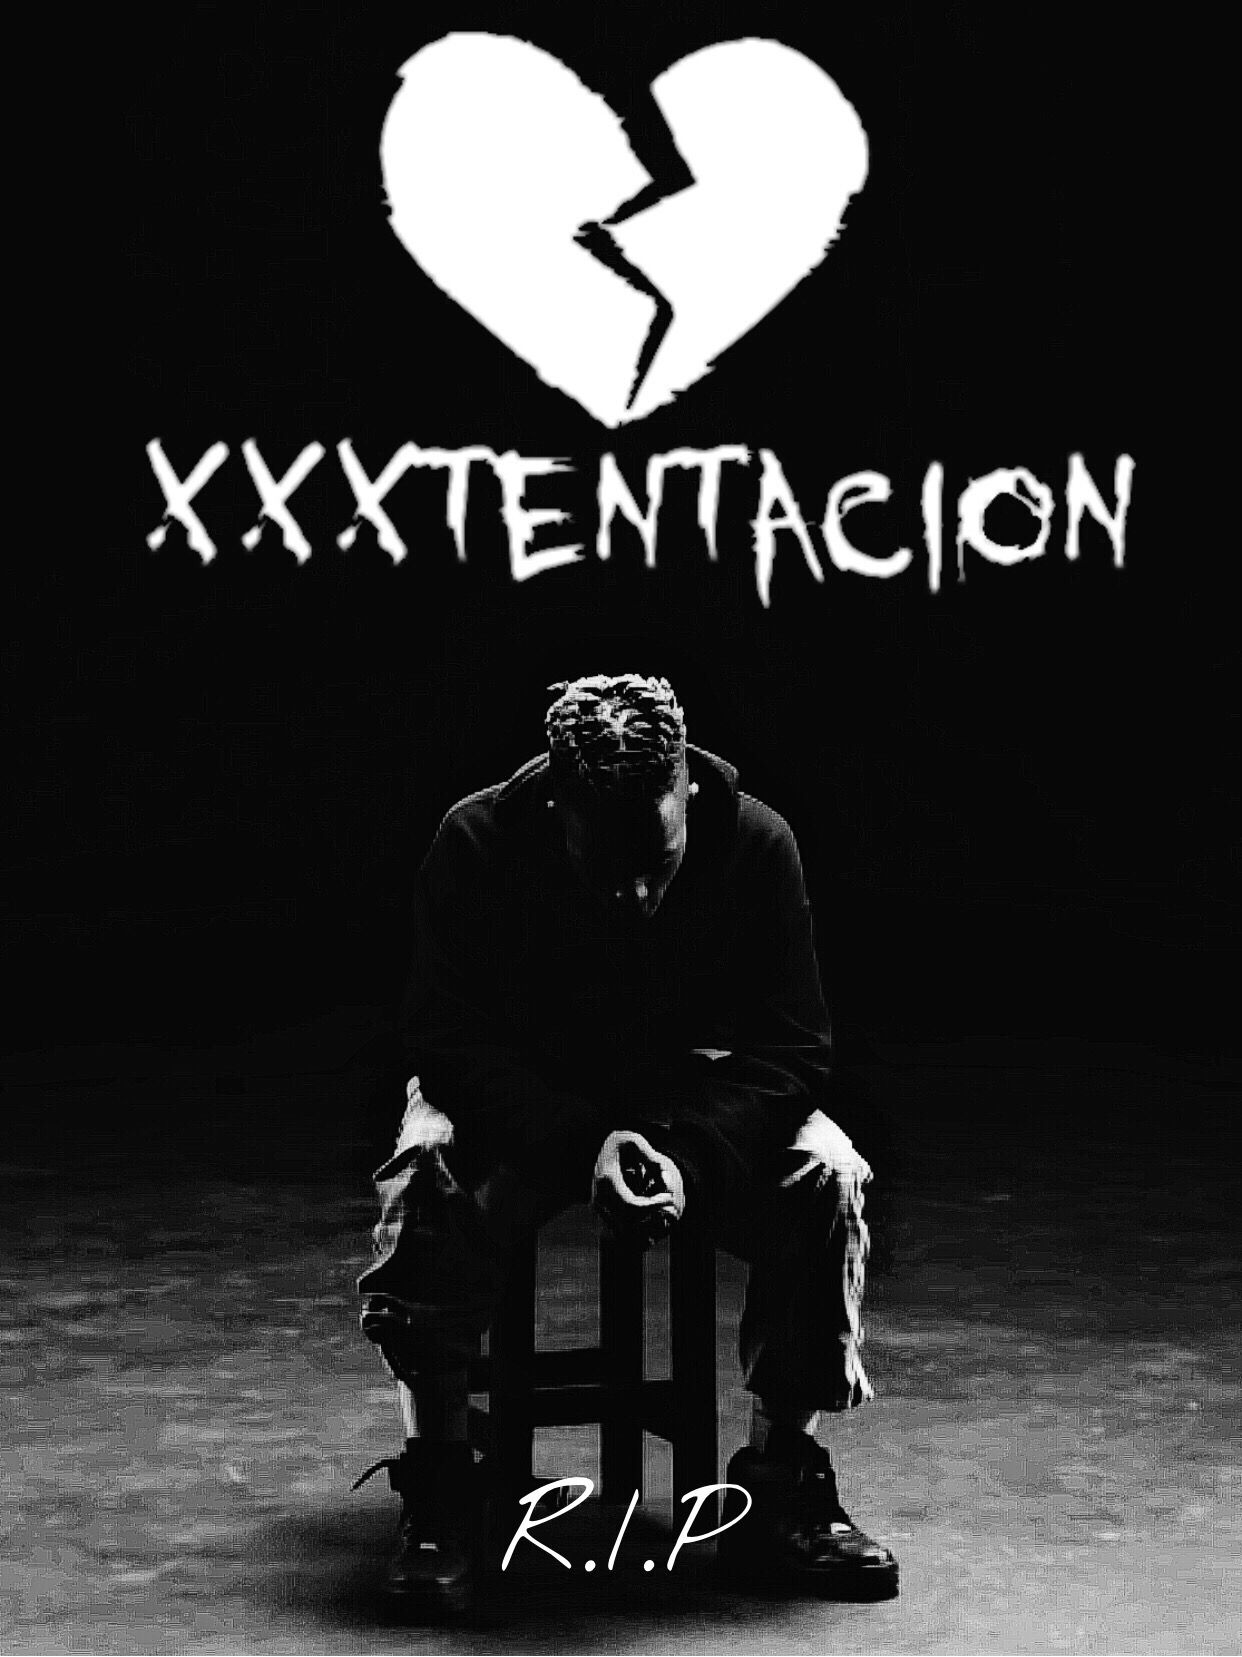 The Most Edited #XXXTentacion